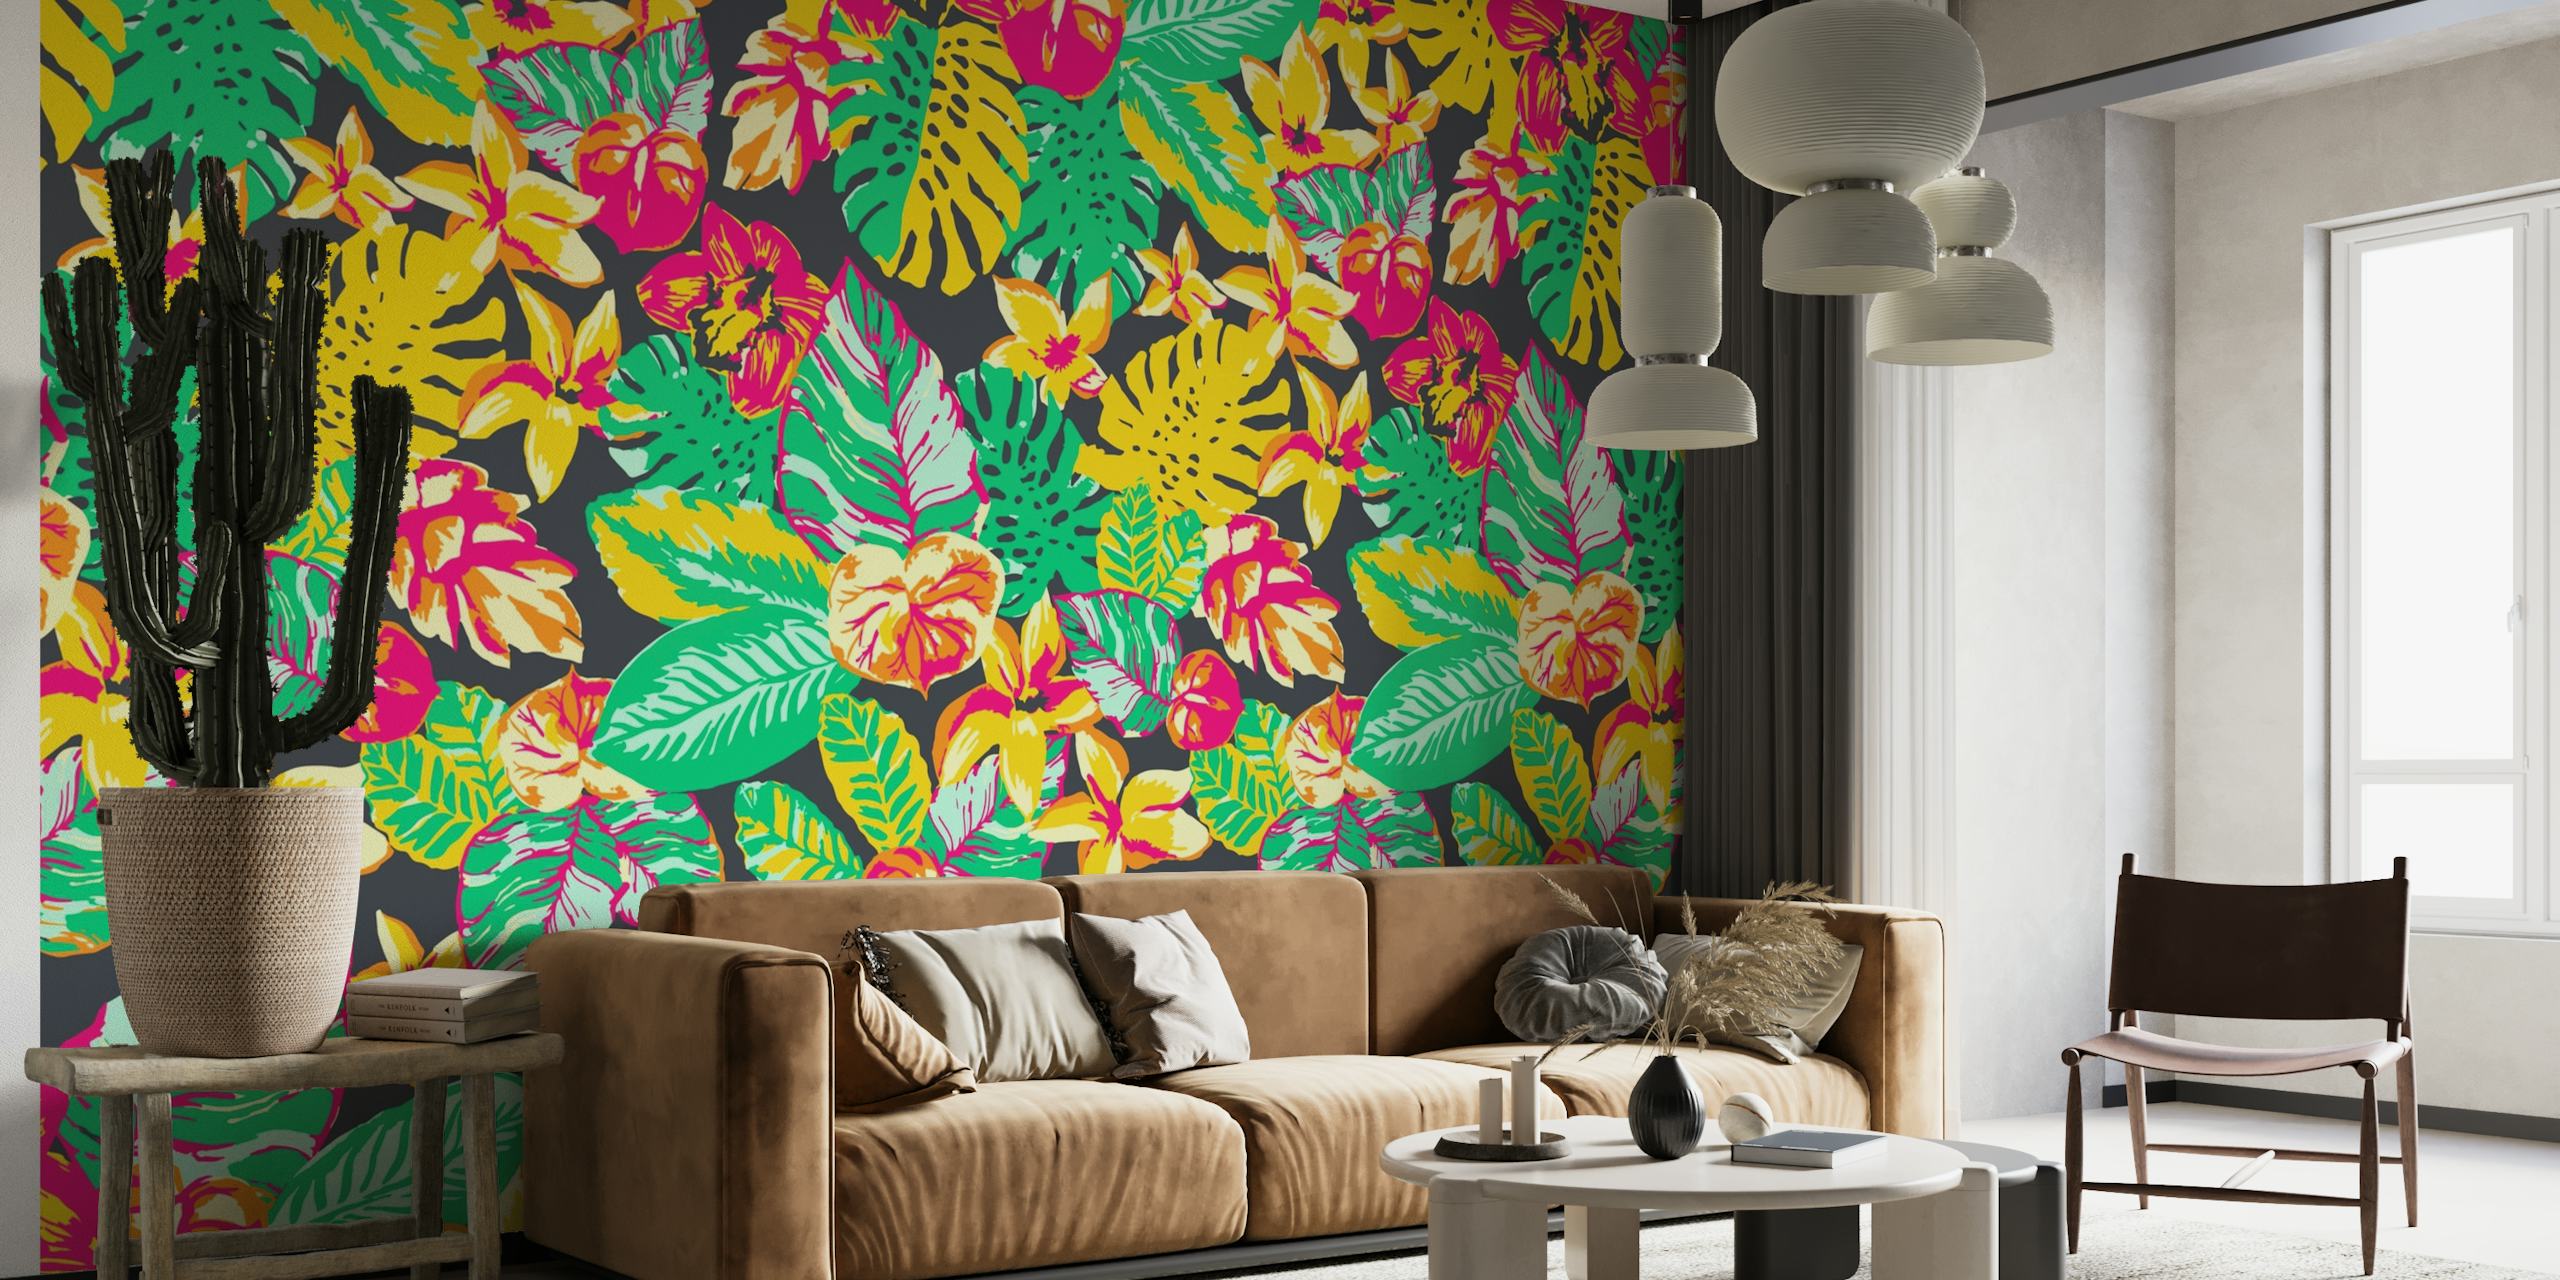 Kleurrijke muurschildering met tropisch junglepatroon met exotische bladeren en bloemen